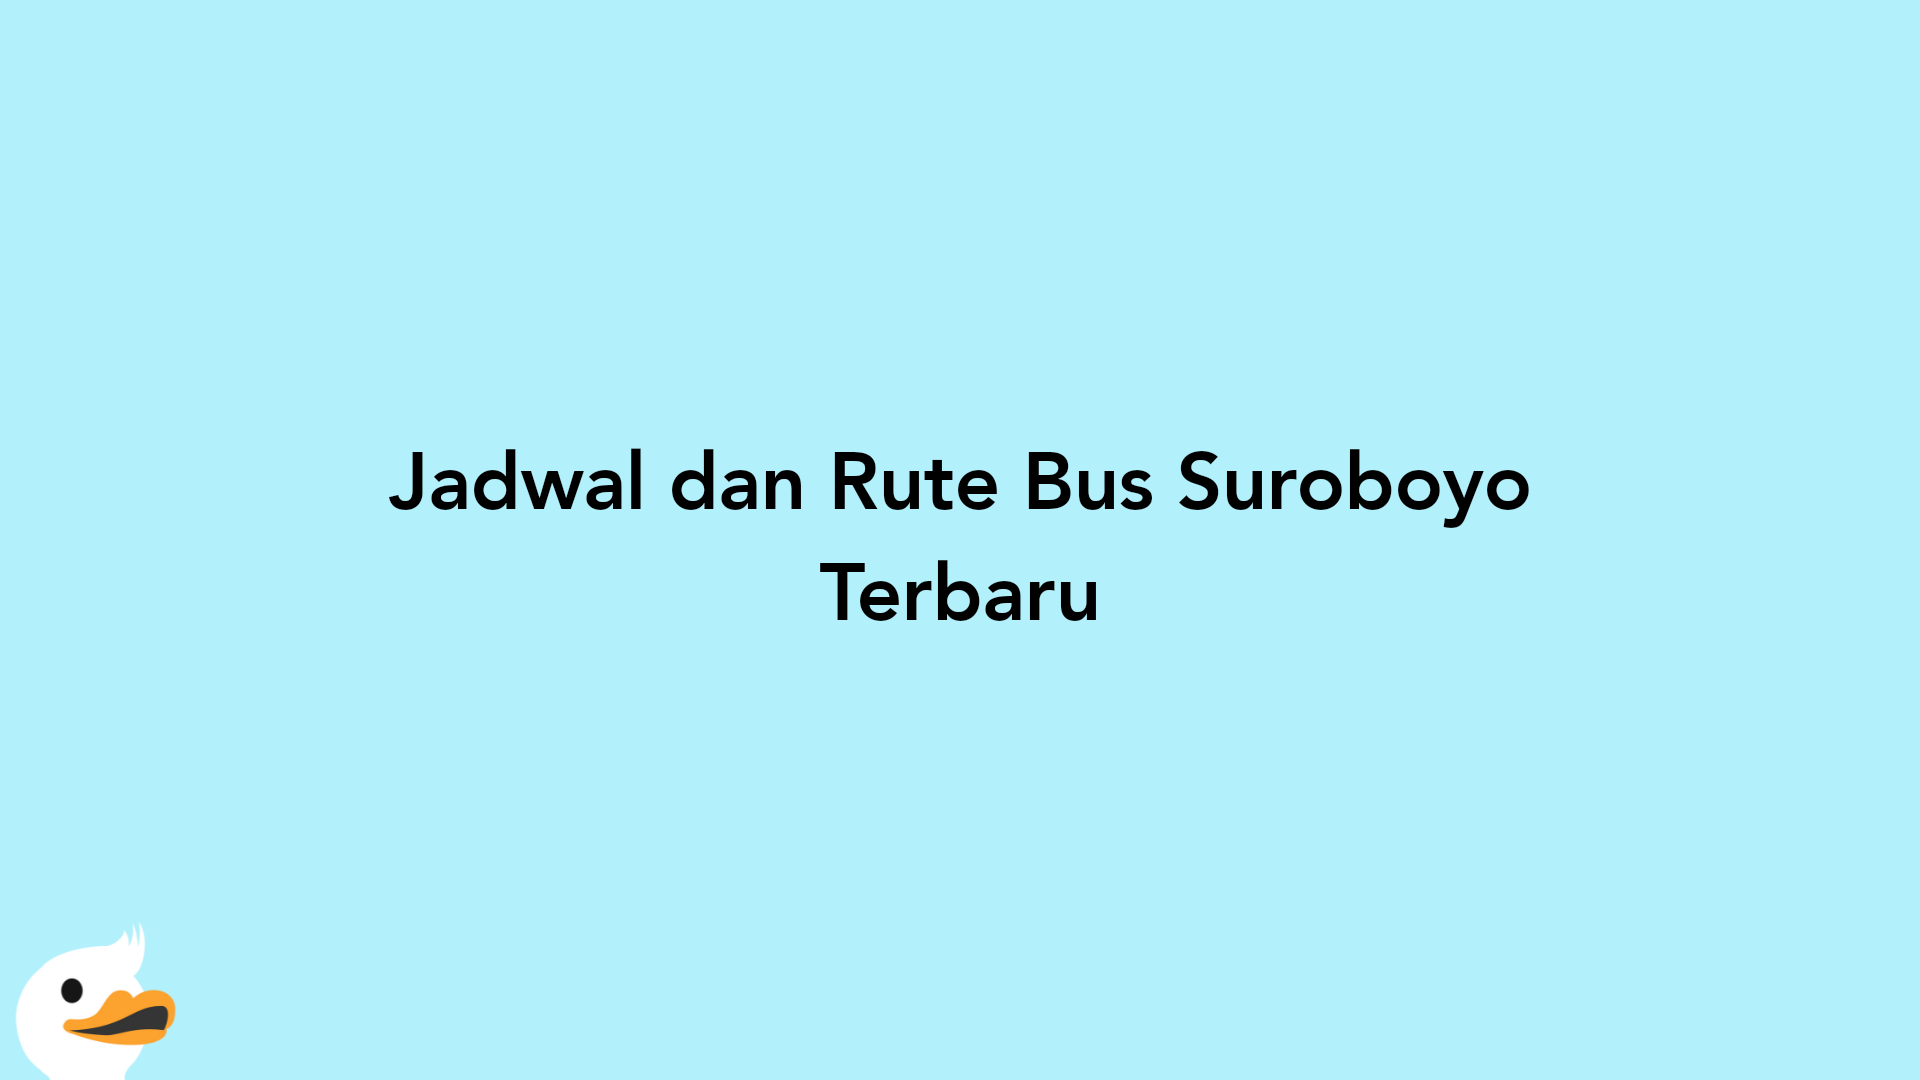 Jadwal dan Rute Bus Suroboyo Terbaru